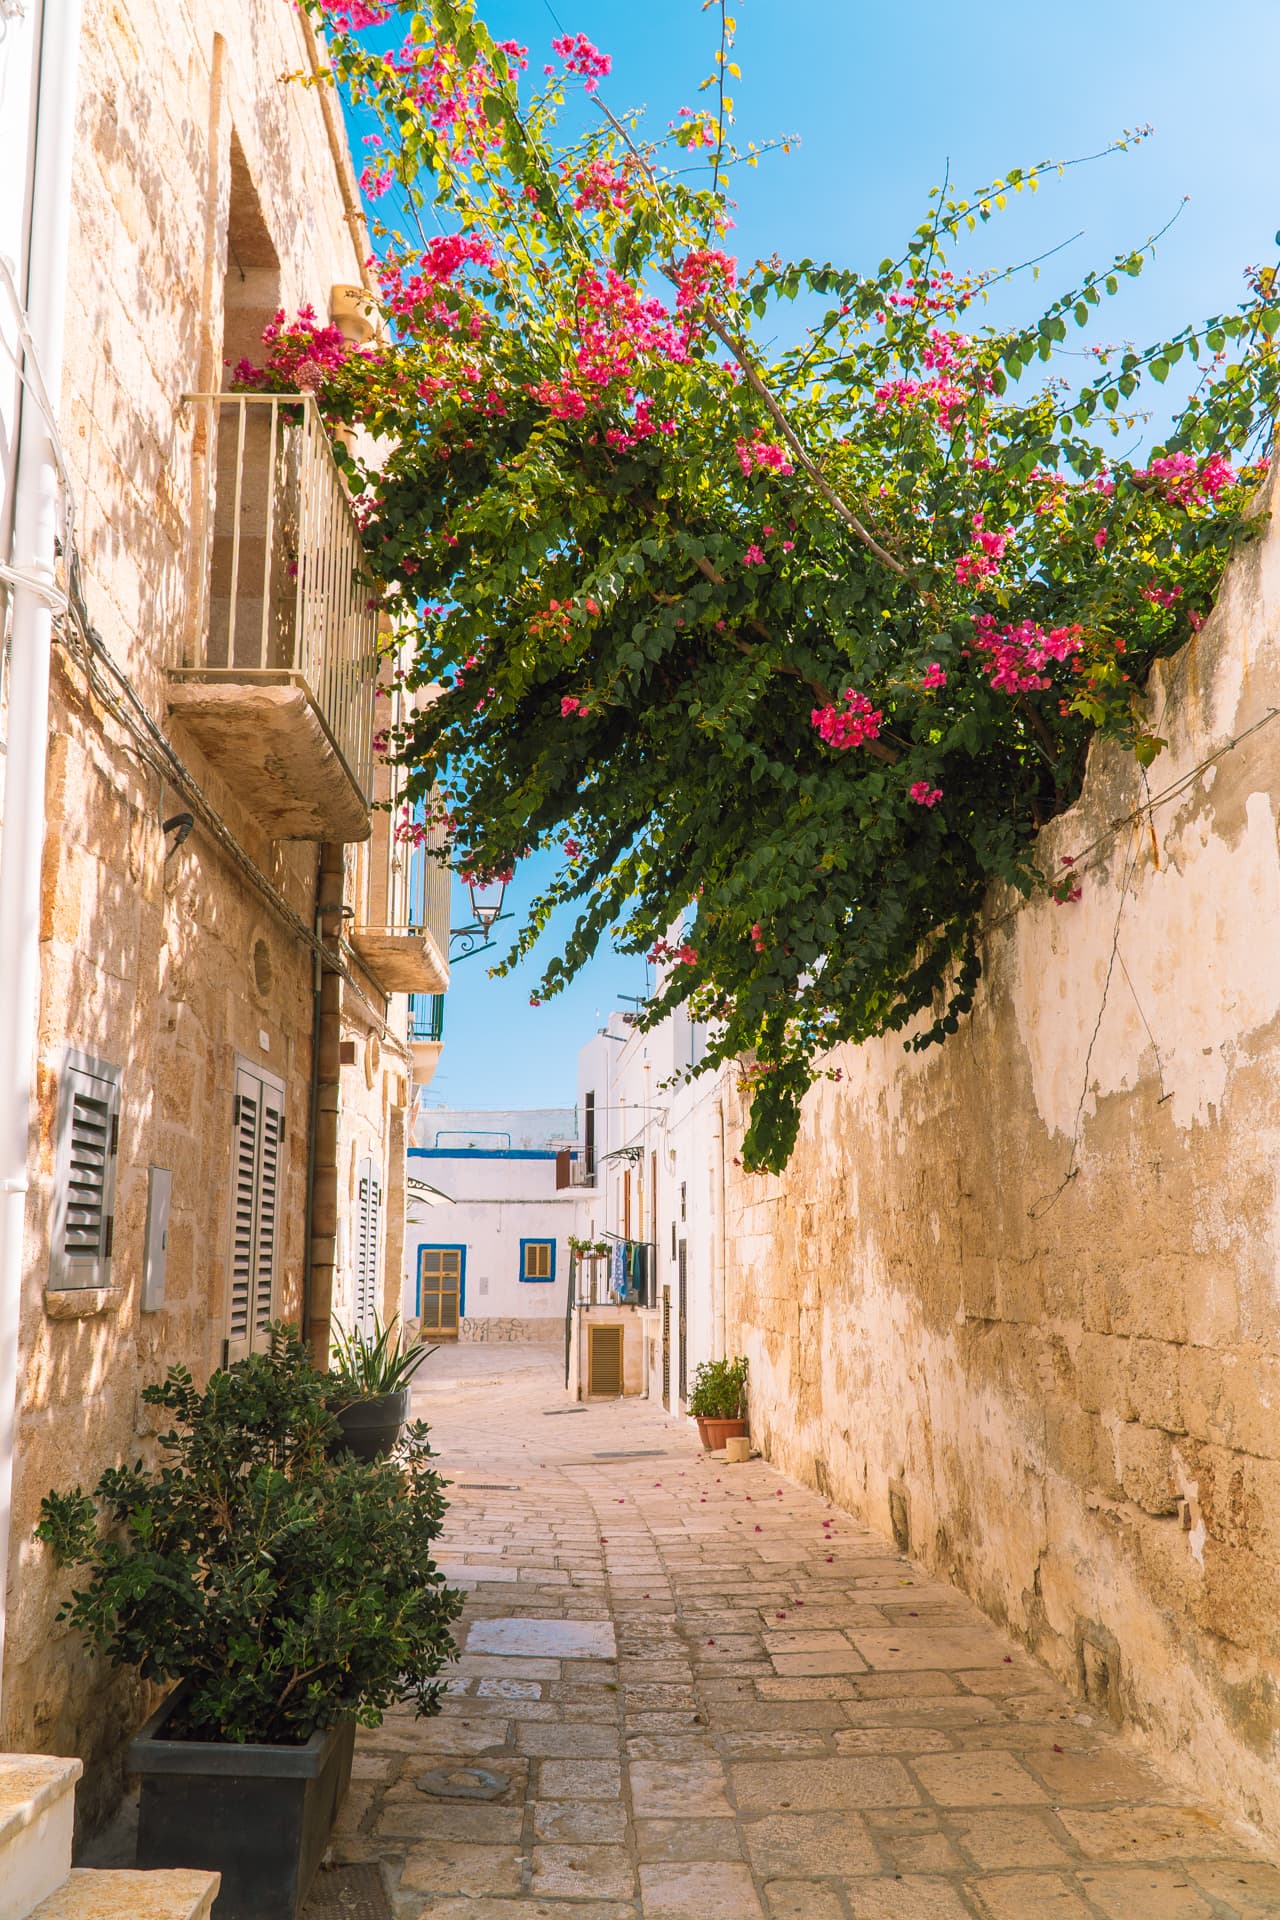 Kwiaty na ulicach Polignano a Mare | Najładniejsze miasteczka w Apulii